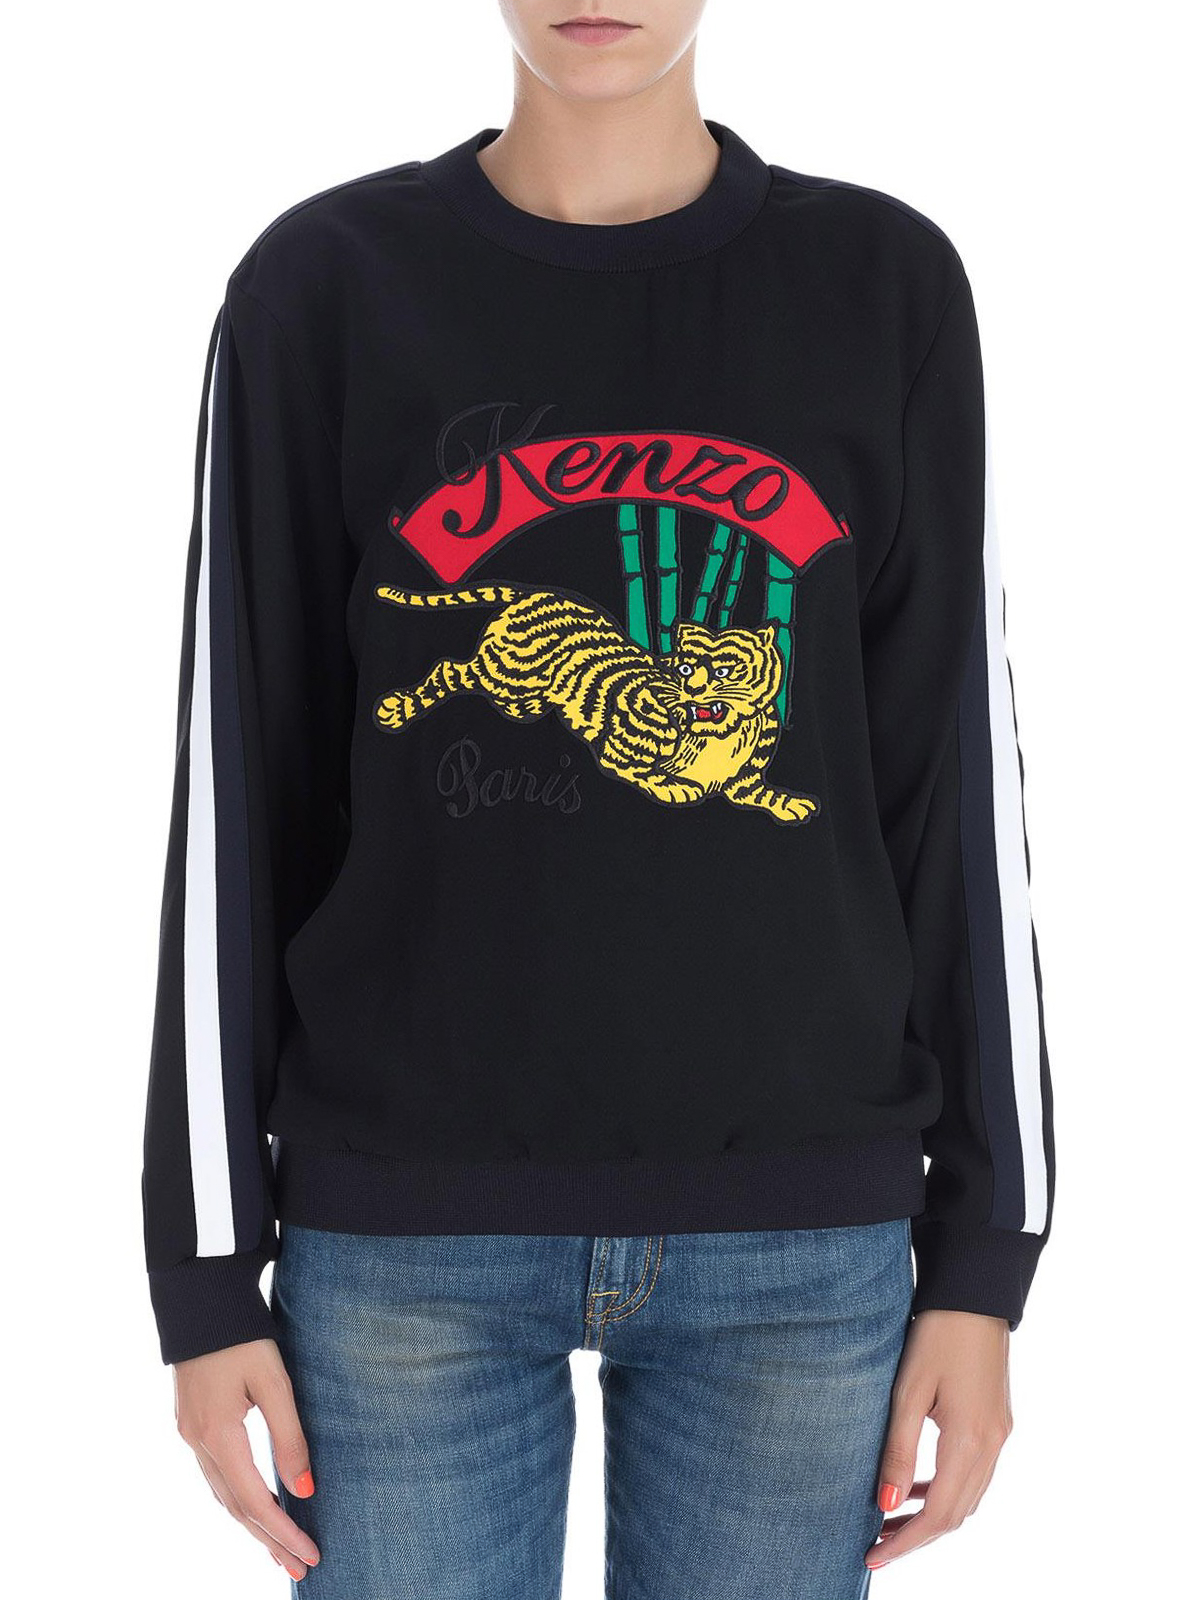 Kenzo - Bamboo Tiger sweatshirt 